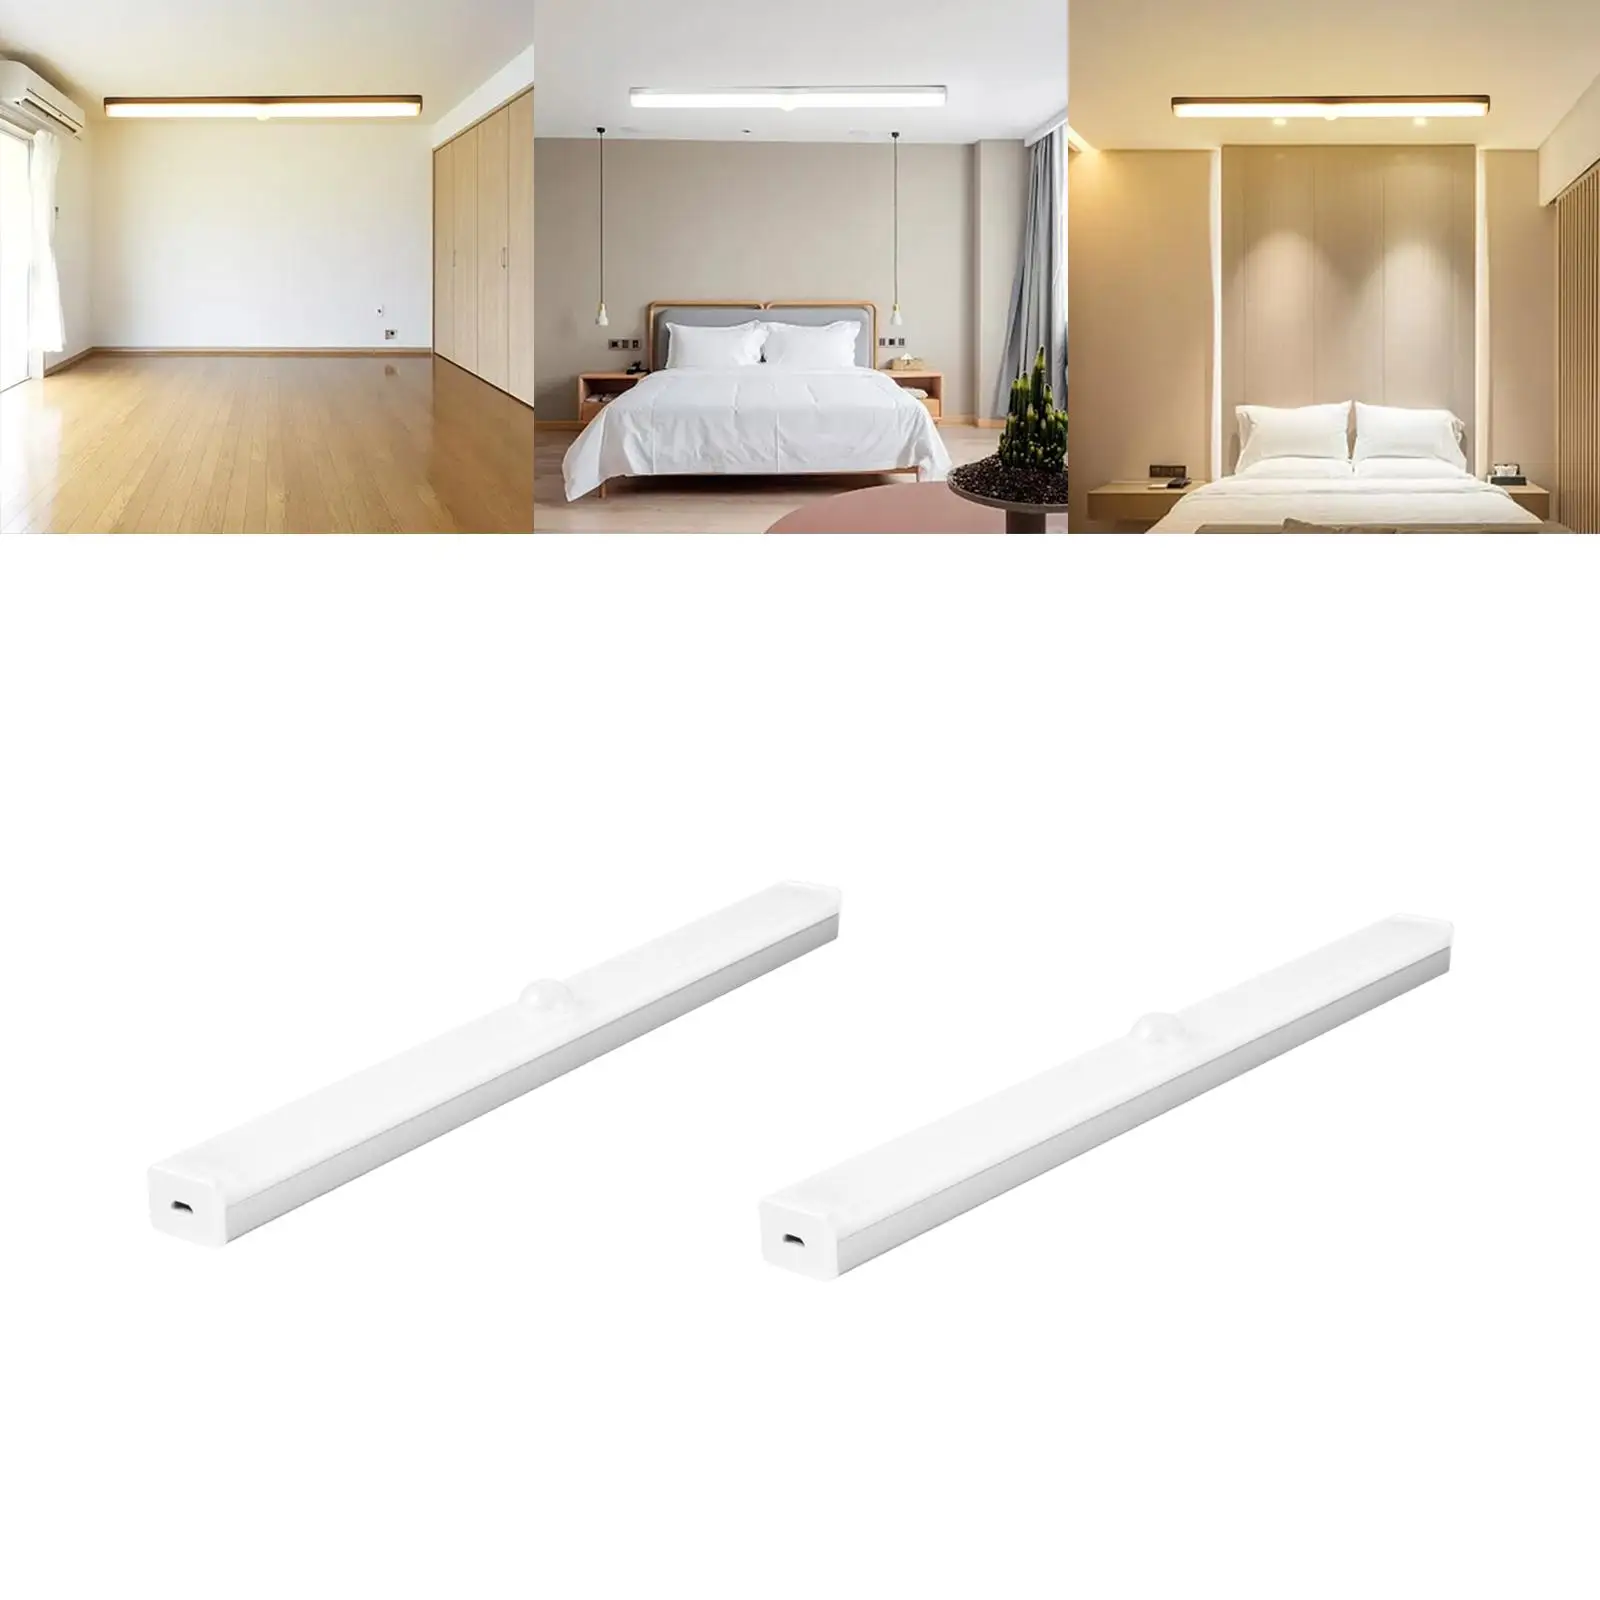 LED Under Cabinet Home Lighting Shelf Bedroom Dimmable Body Sensor Lights Lights Strip Bar for Vanity Dining Room Wardrobe Desk